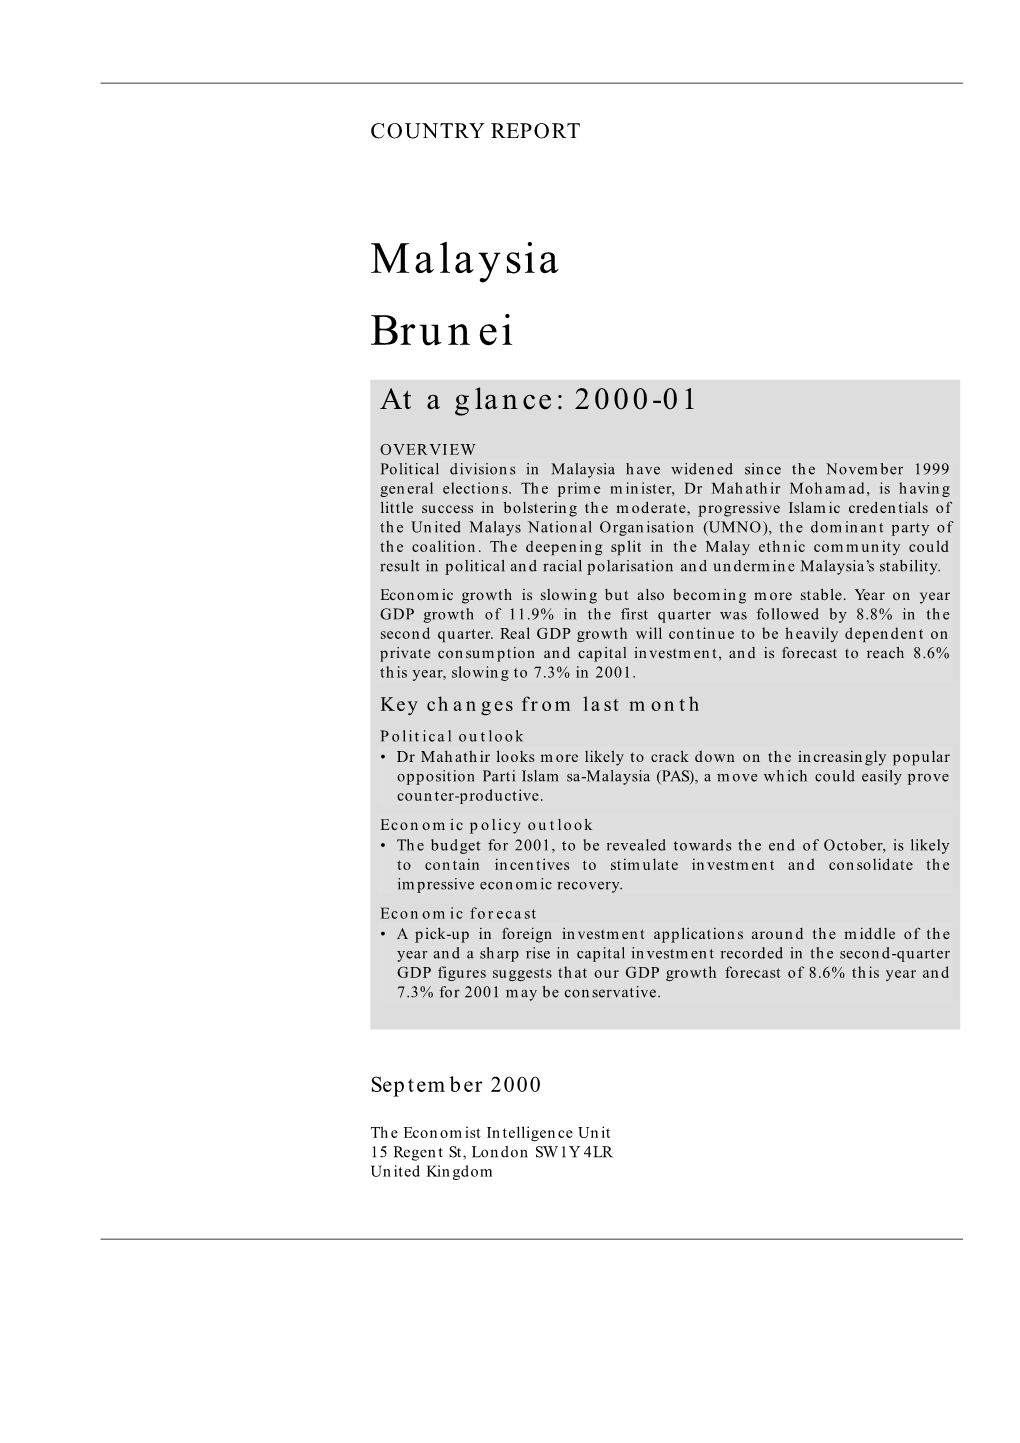 Malaysia Brunei at a Glance: 2000-01